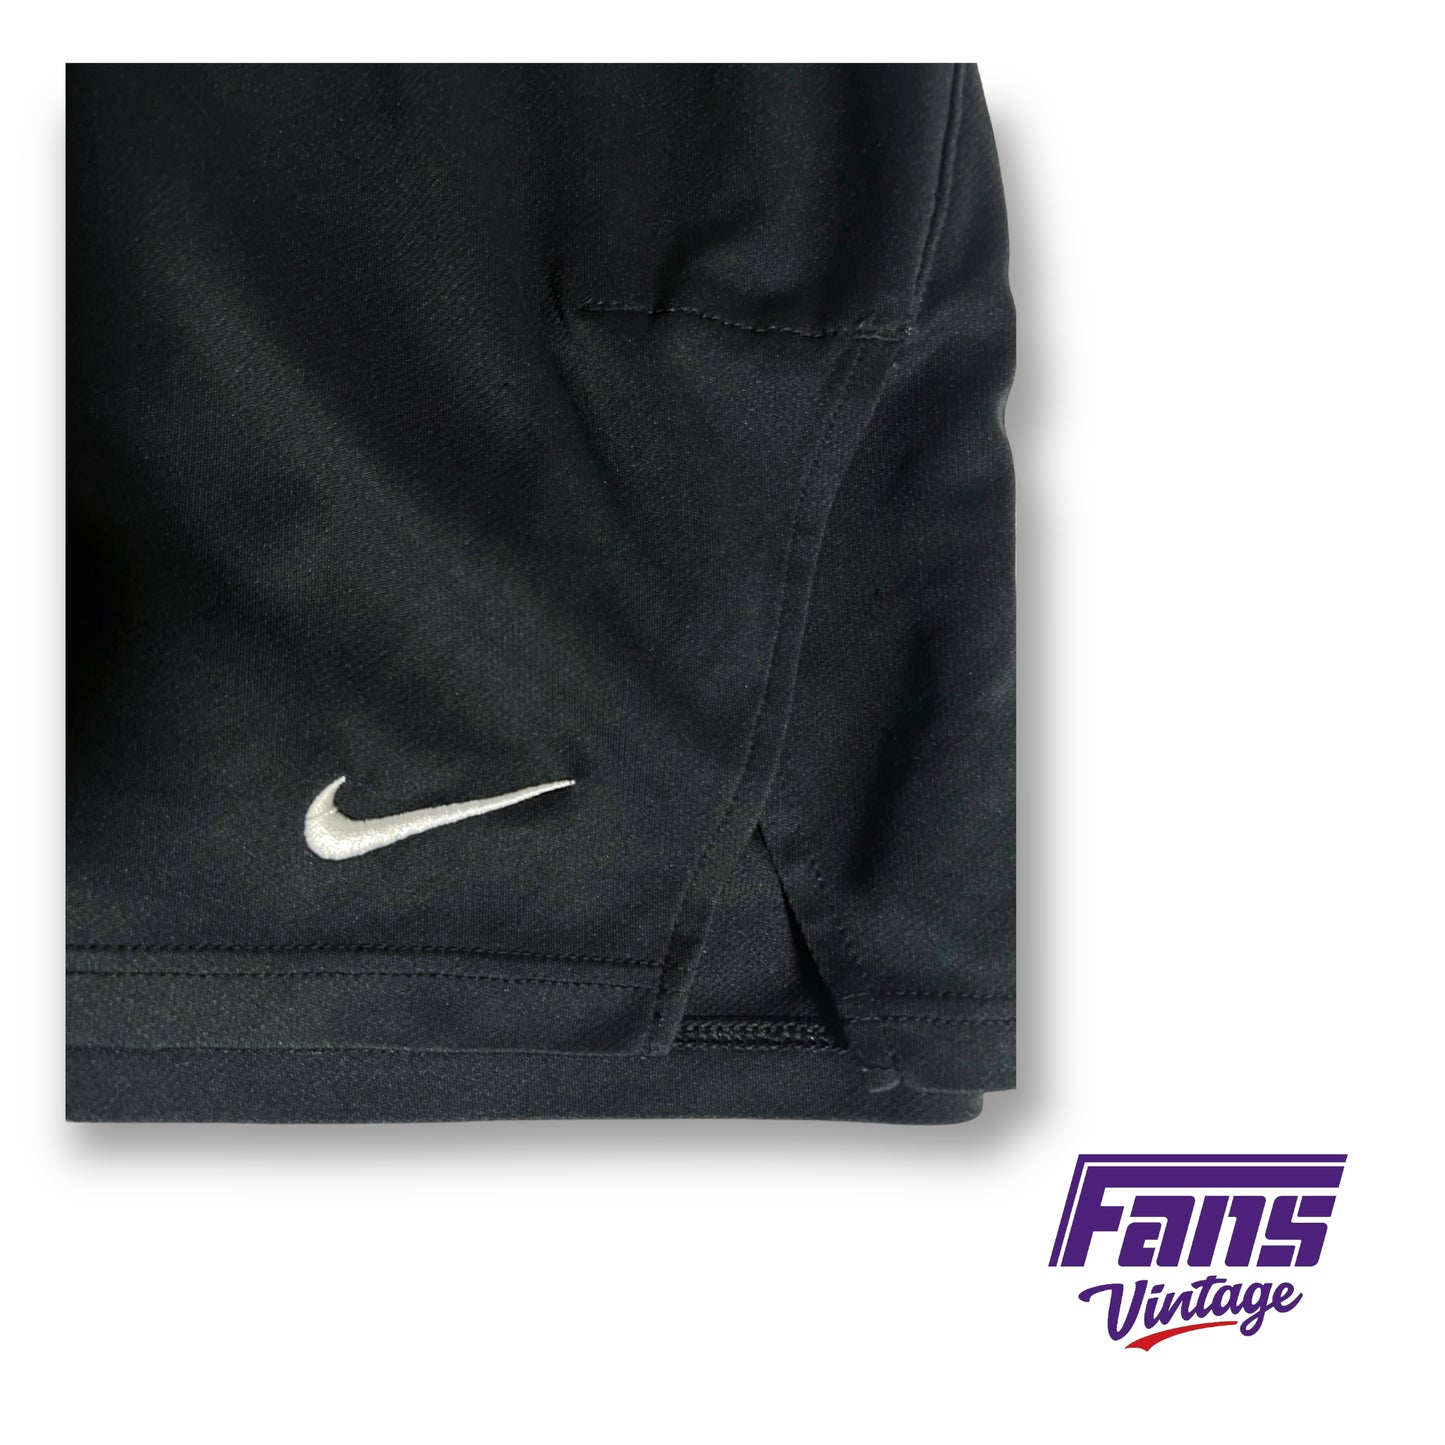 Nike TCU team issued dri-fit shorts - Purple Emblem